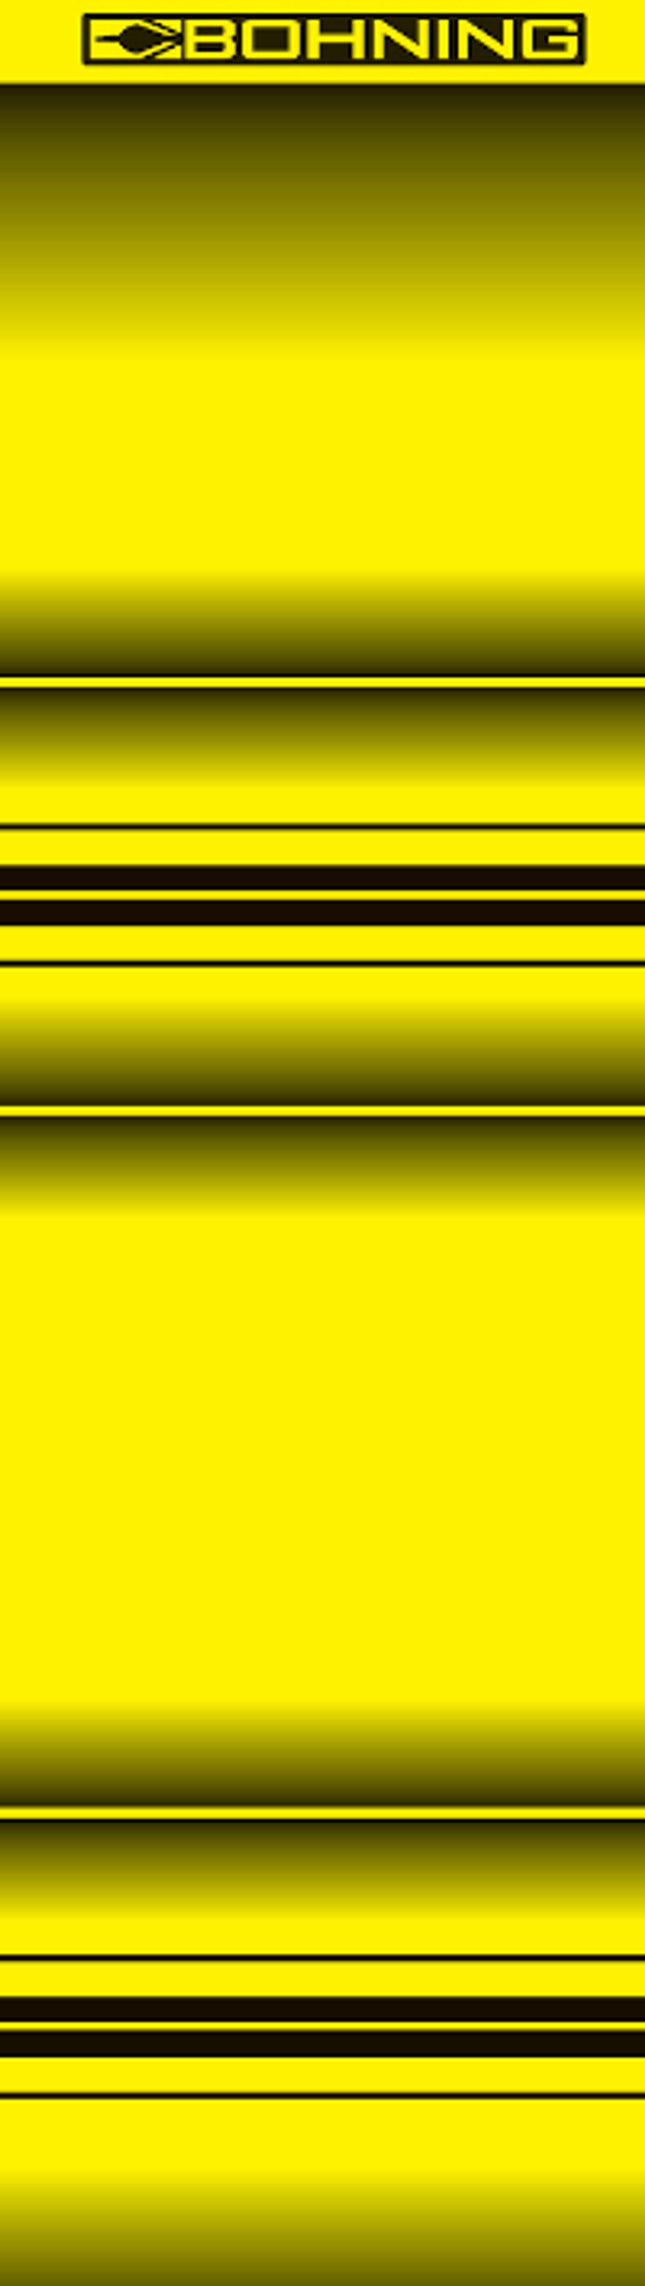 Bohning Wrap, 4", Standard, Yellow Airbrush, 13pk